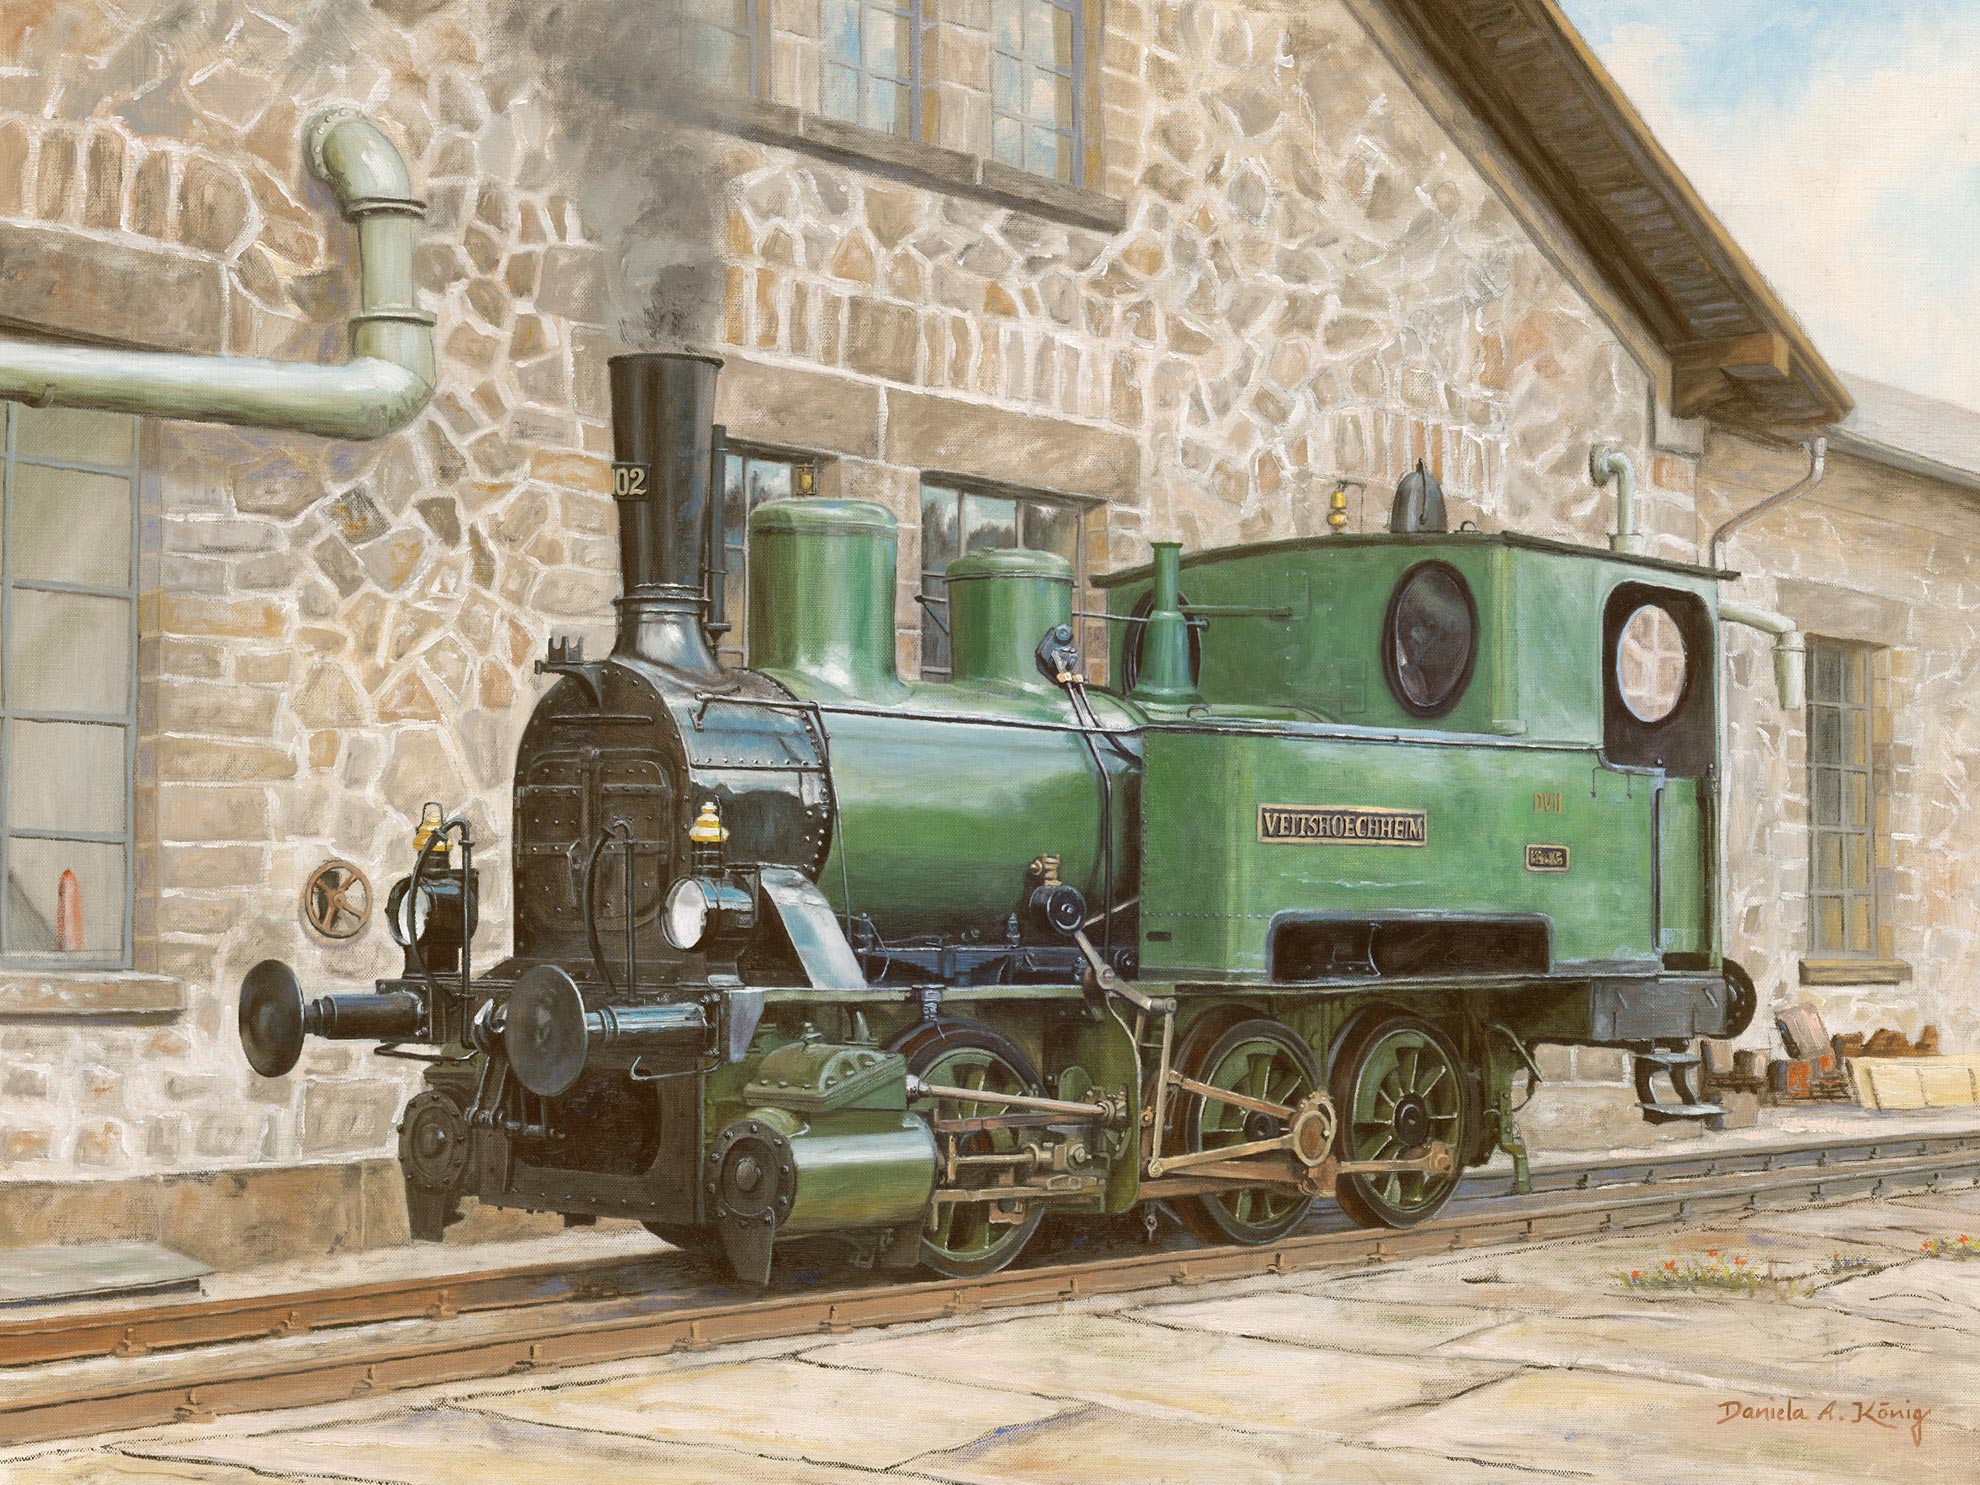 Dampflok Veitshöchheim - Bayerische Lokalbahnlokomotive D VII 102 (später DRG 98 7607) Vor Historischem Lokschuppen - 60 X 80 Cm - Öl Auf Leinen